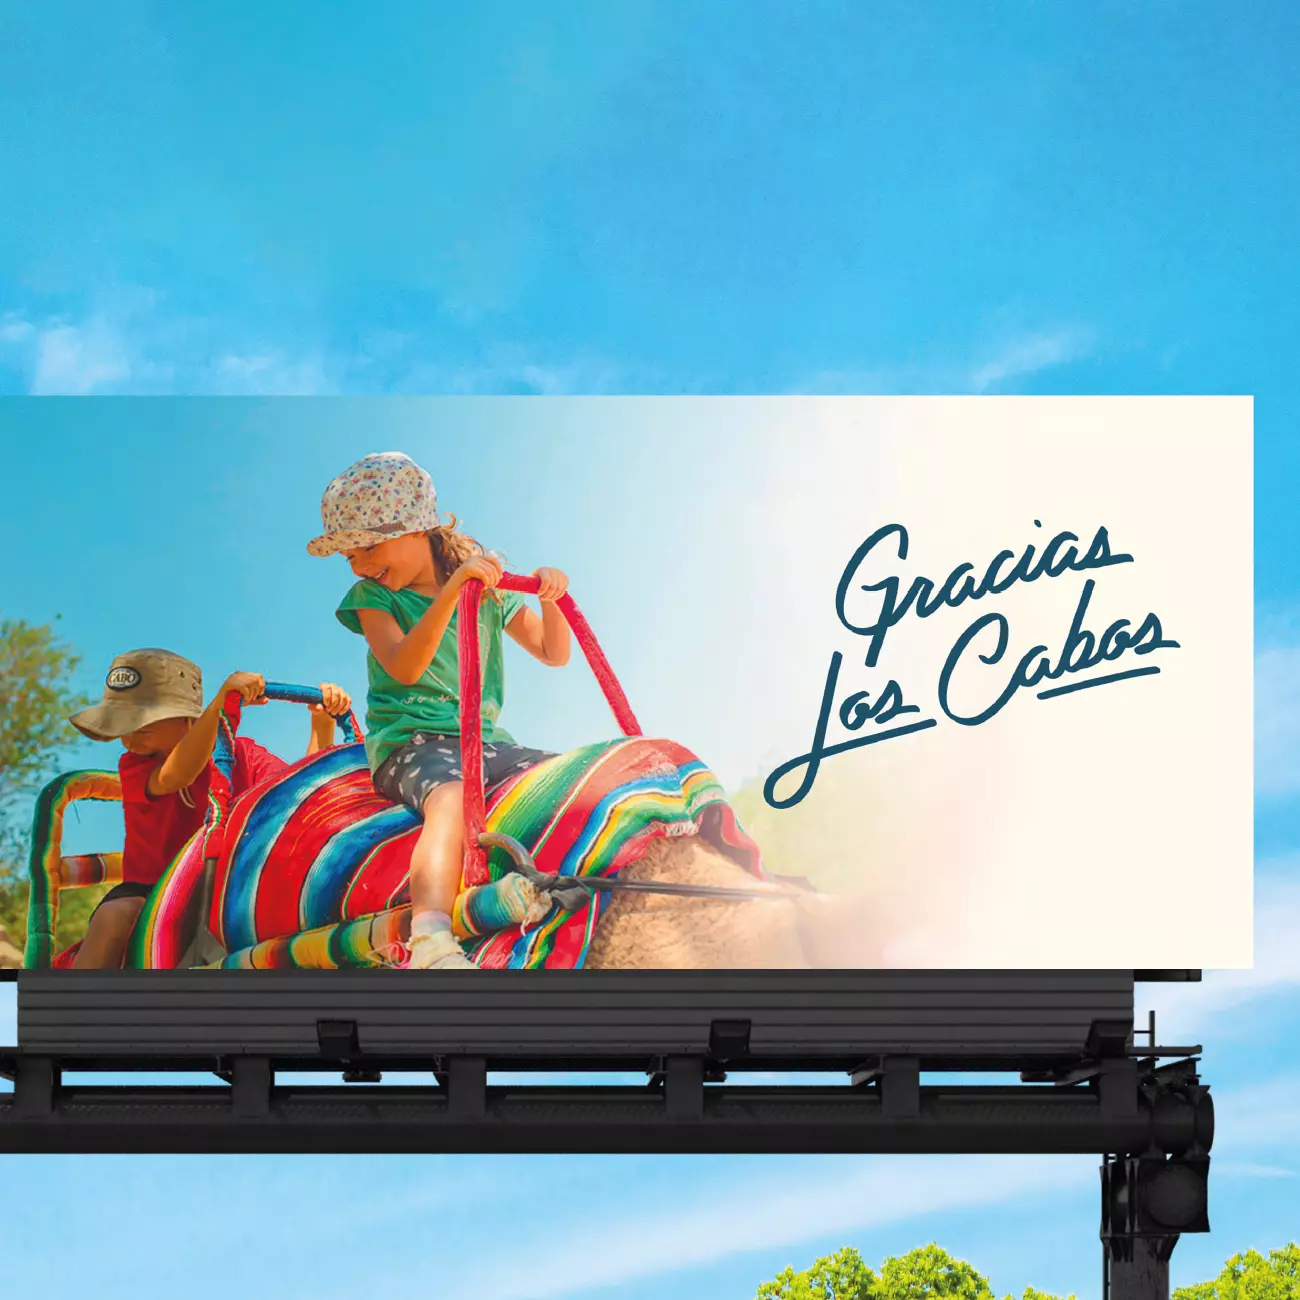 Portafolio OH marketing – Los Cabos (4)